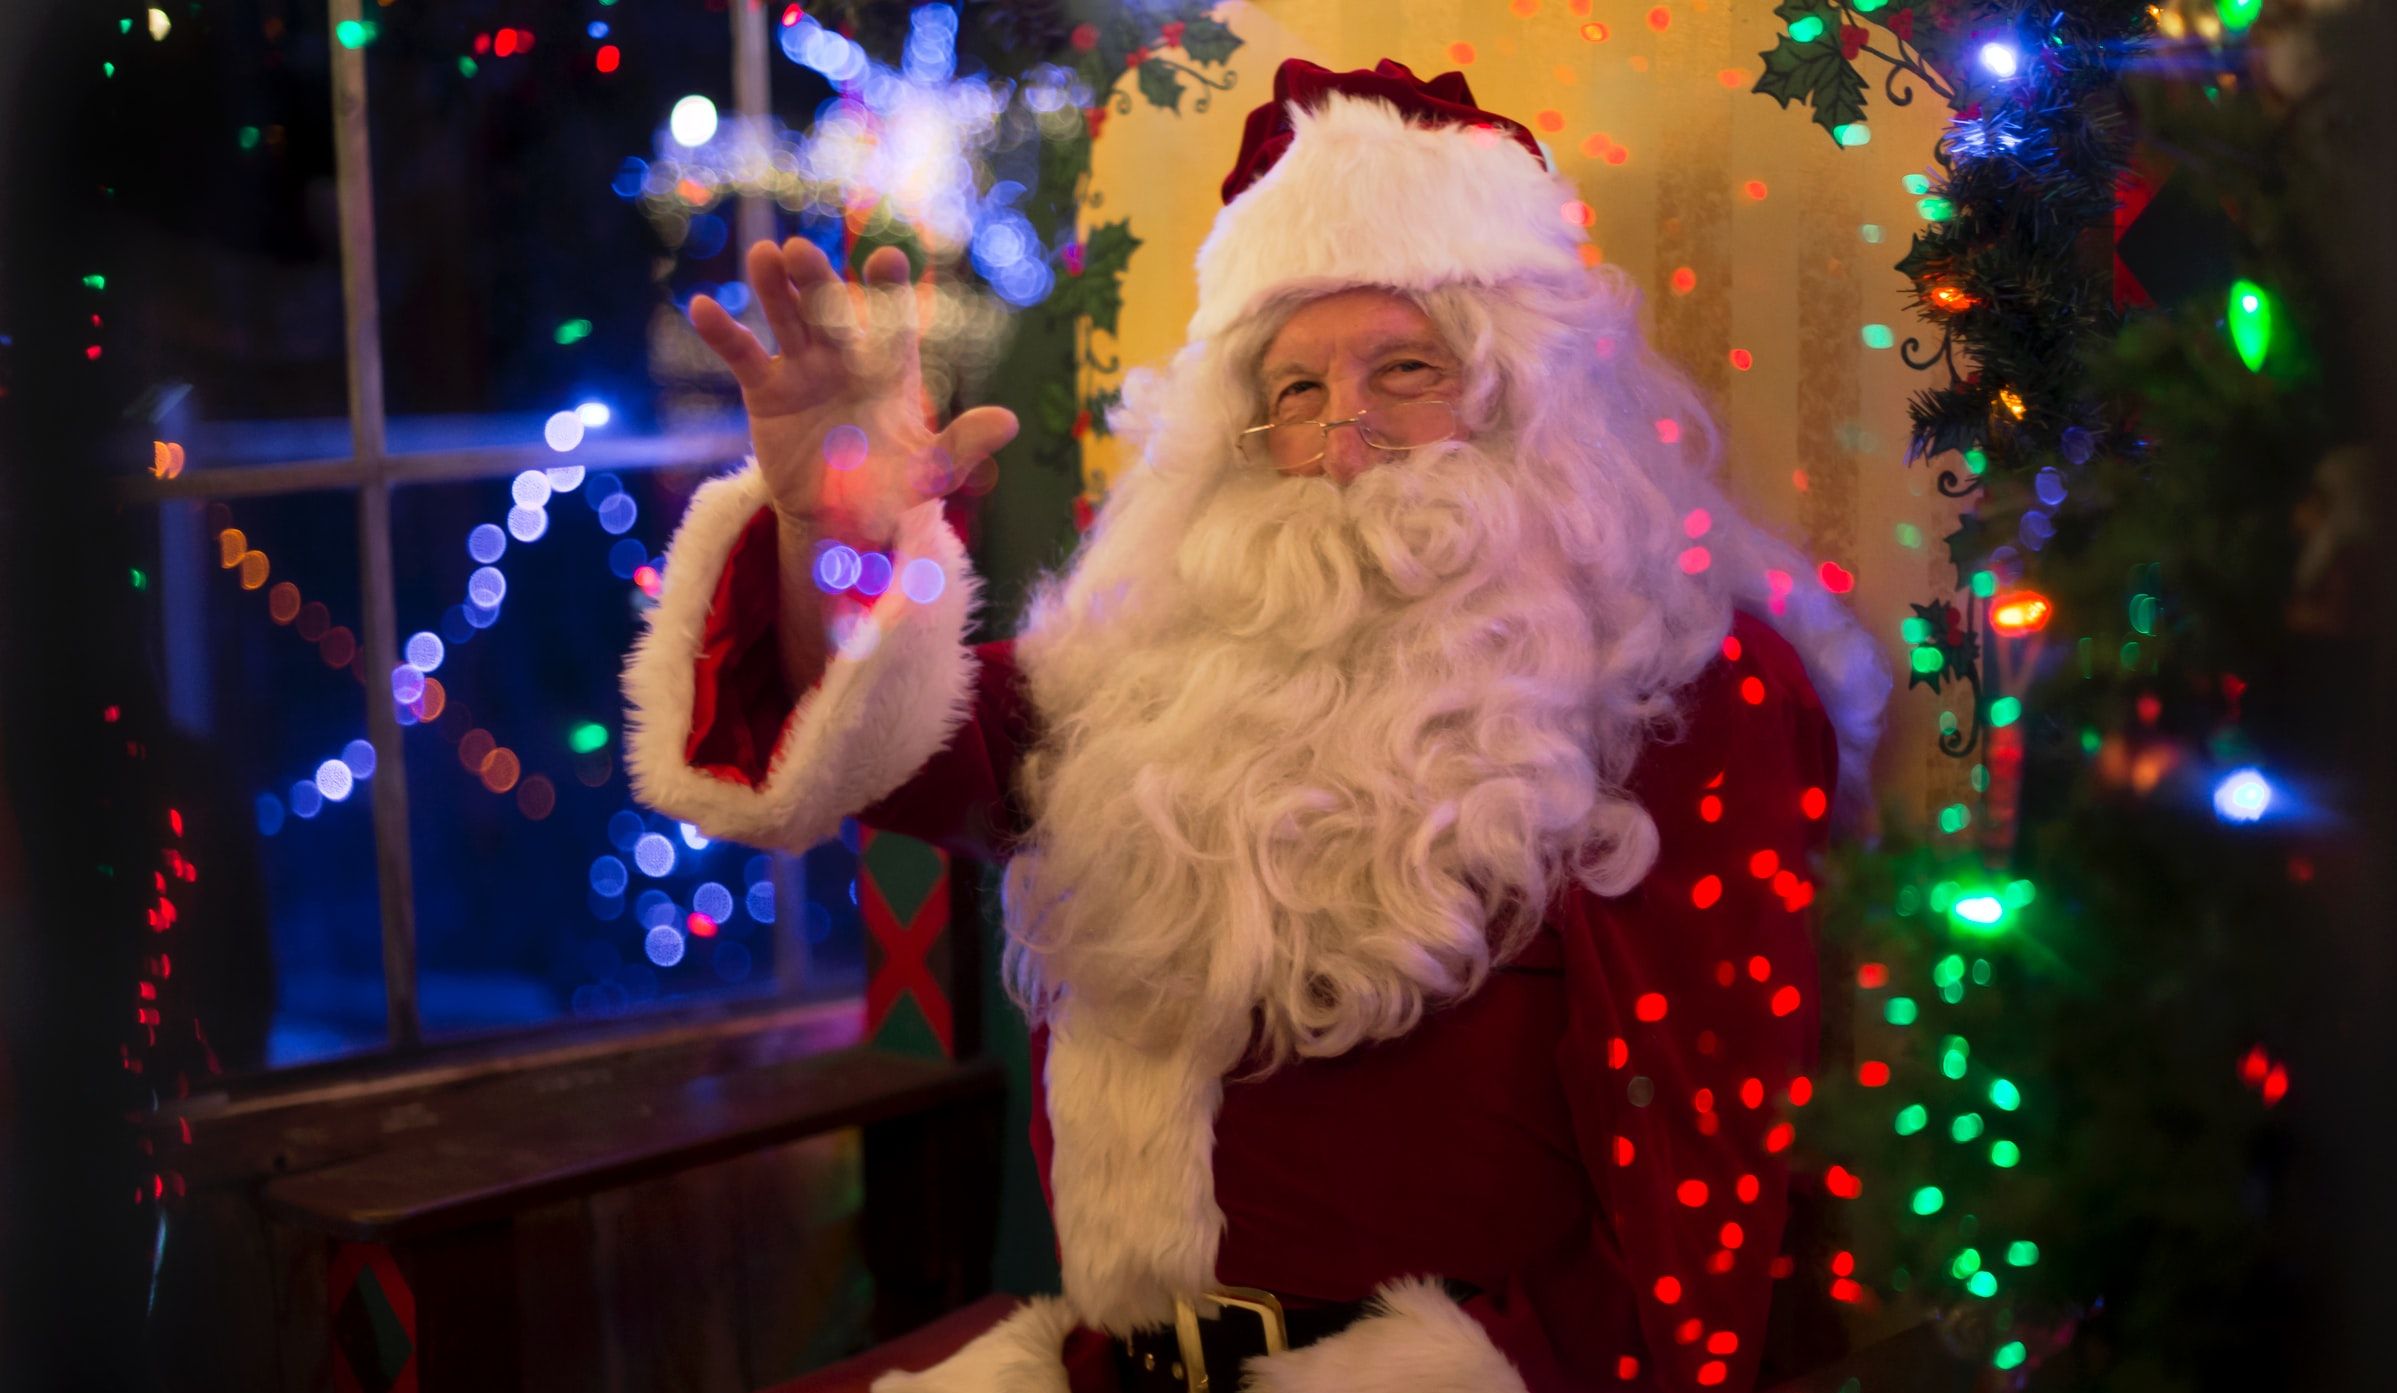 Modelfoto af hvordan den kommende julemand fra Santaful kan komme til at se ud. Foto: Tim Mossholder